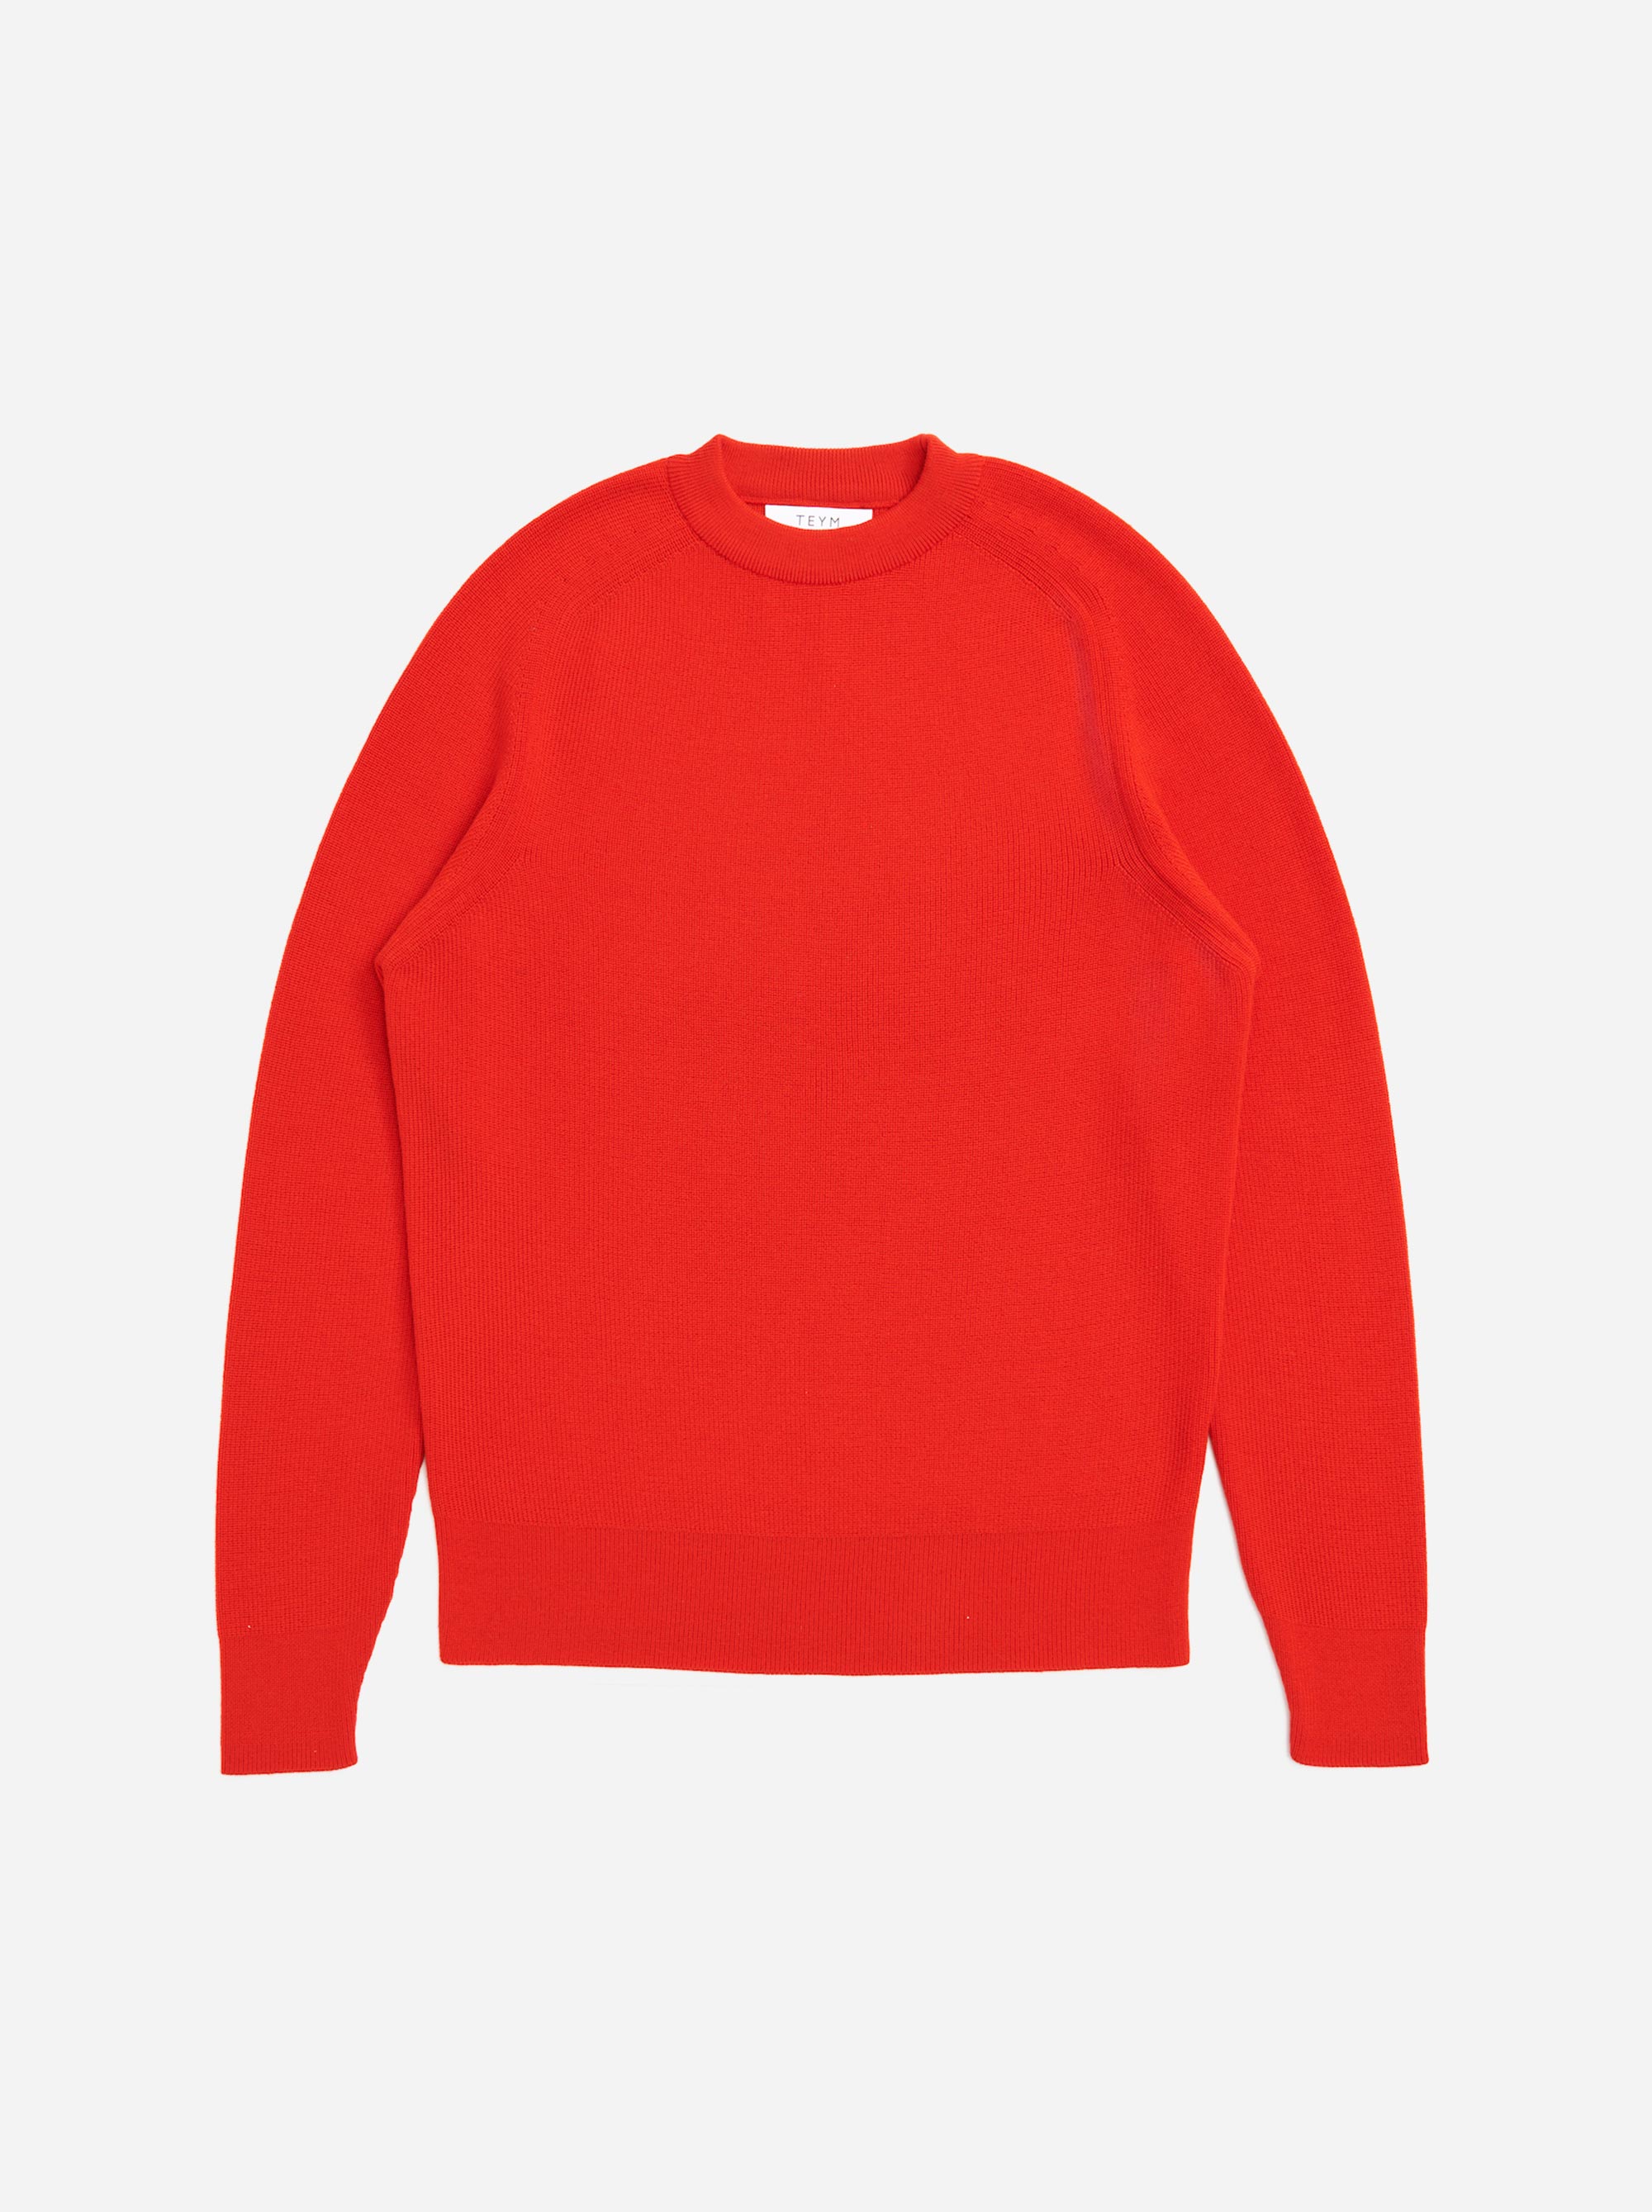 Teym - The Merino Sweater - Men - Red - 5